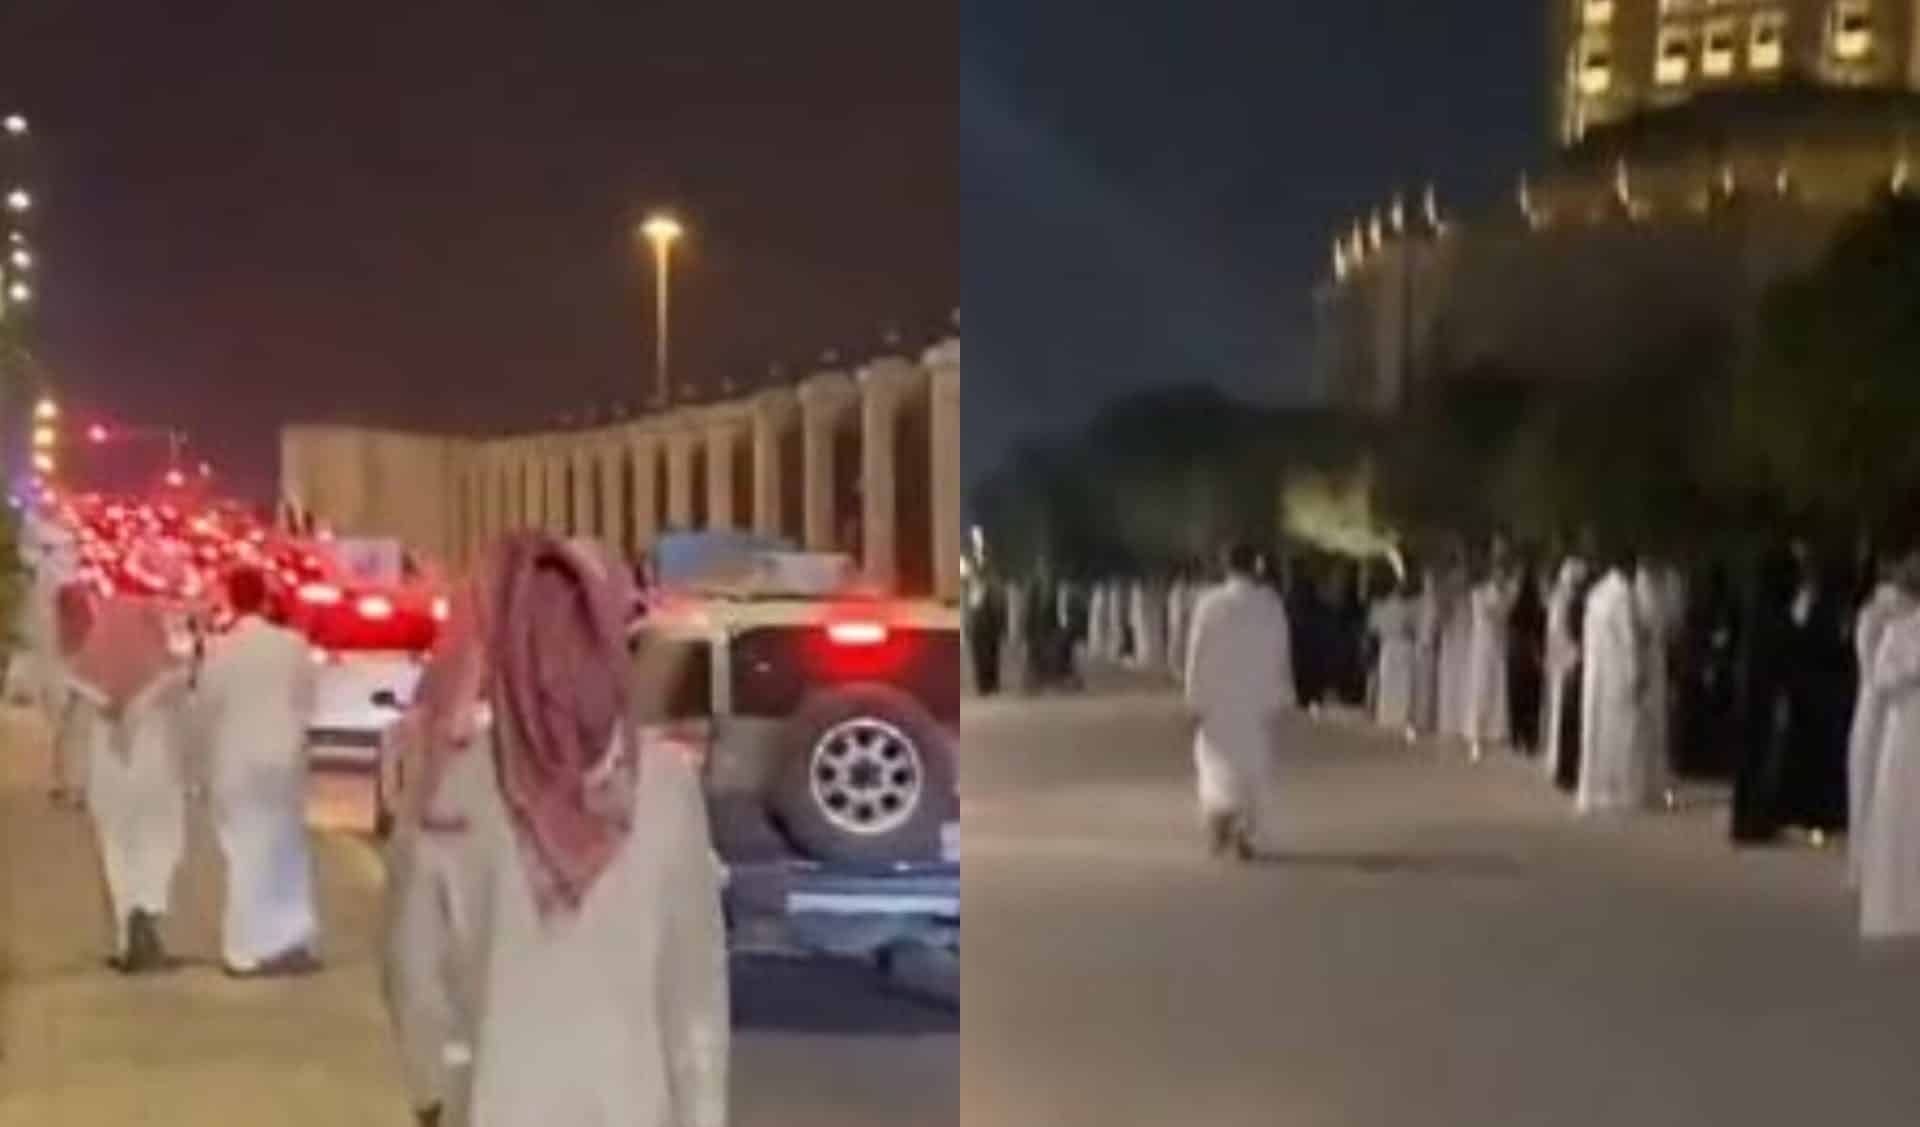 عرب ترند - أثار فيديو معرض توظيف في الرياض ضجة واسعة ليعيد جدل قضية البطالة إلى السعودية. alarabtrend.com